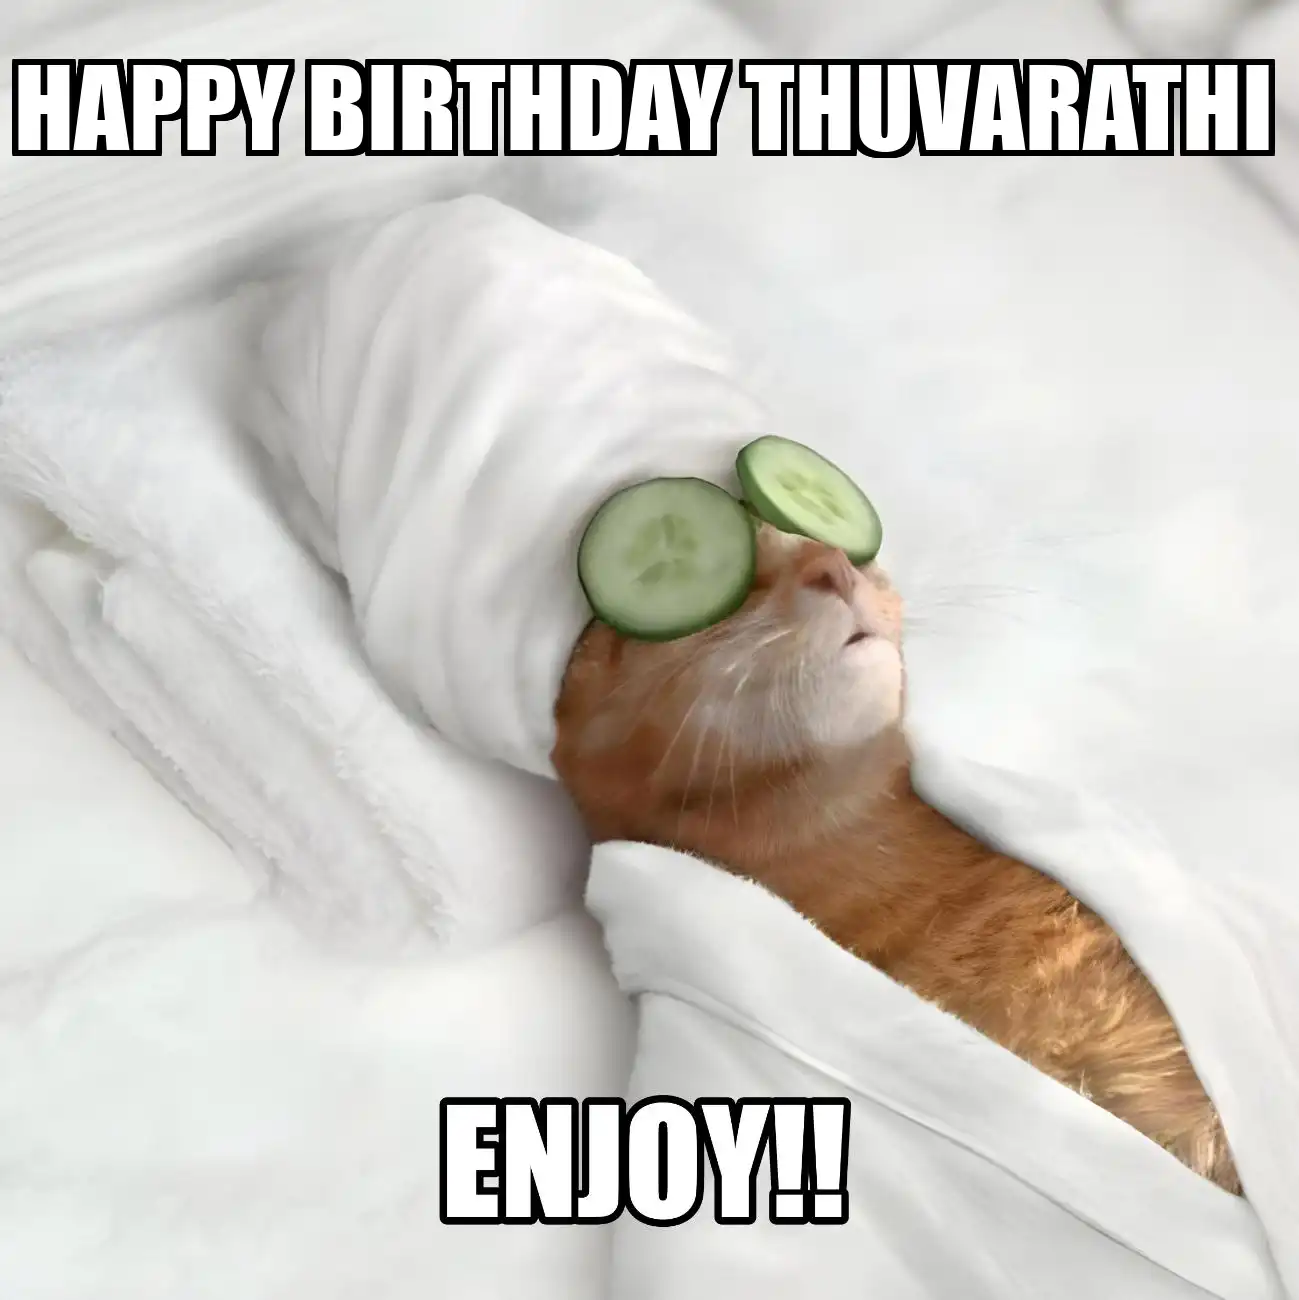 Happy Birthday Thuvarathi Enjoy Cat Meme